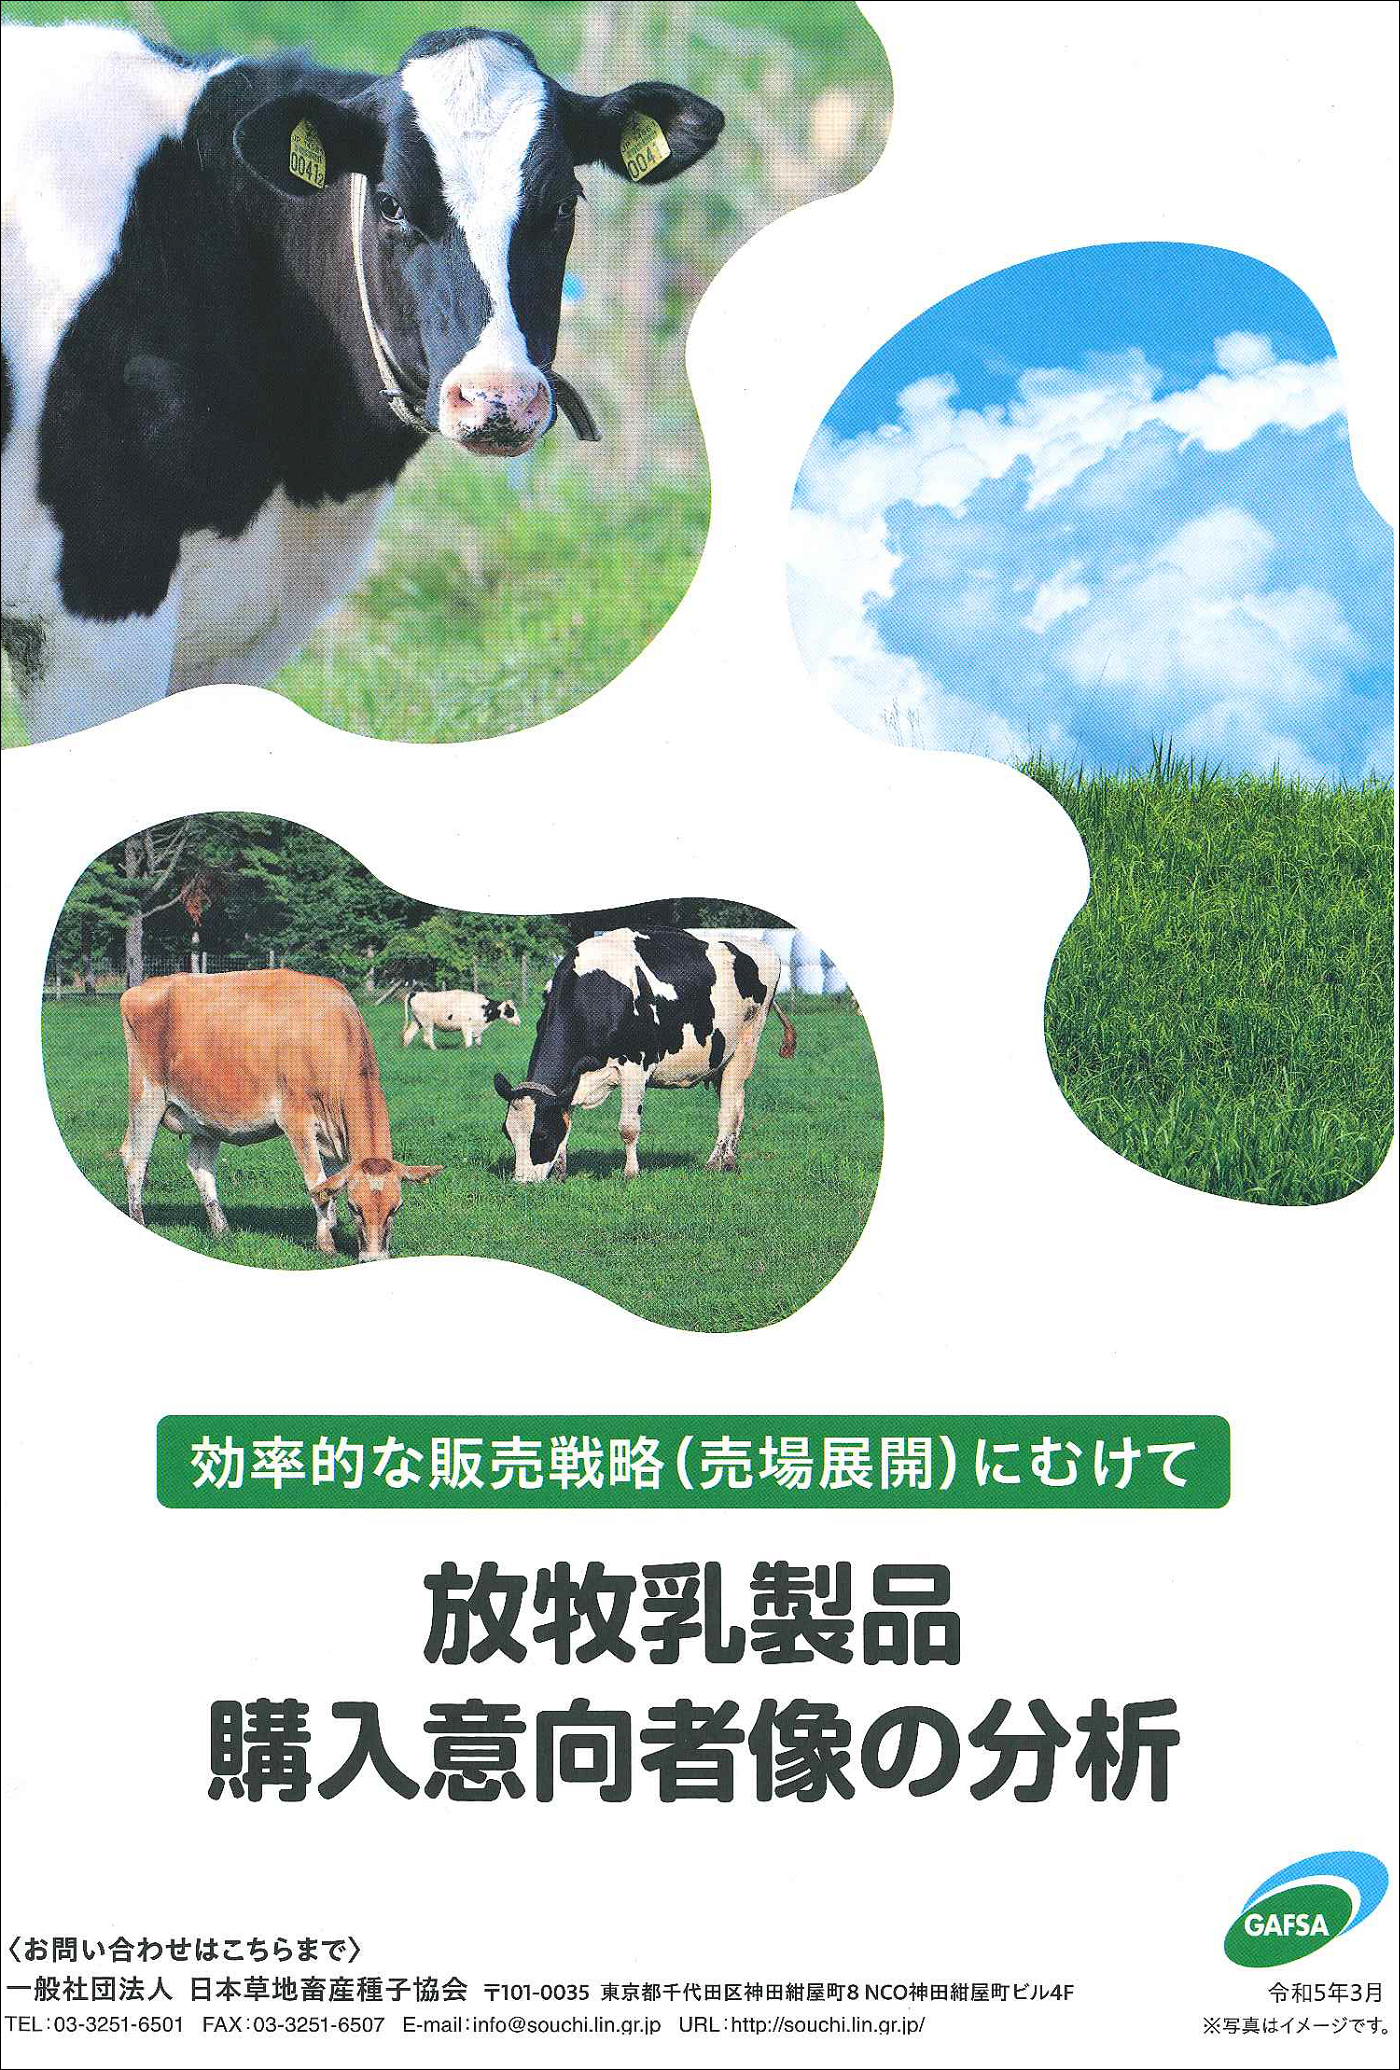 草地協会がまとめた放牧乳製品の消費者分析